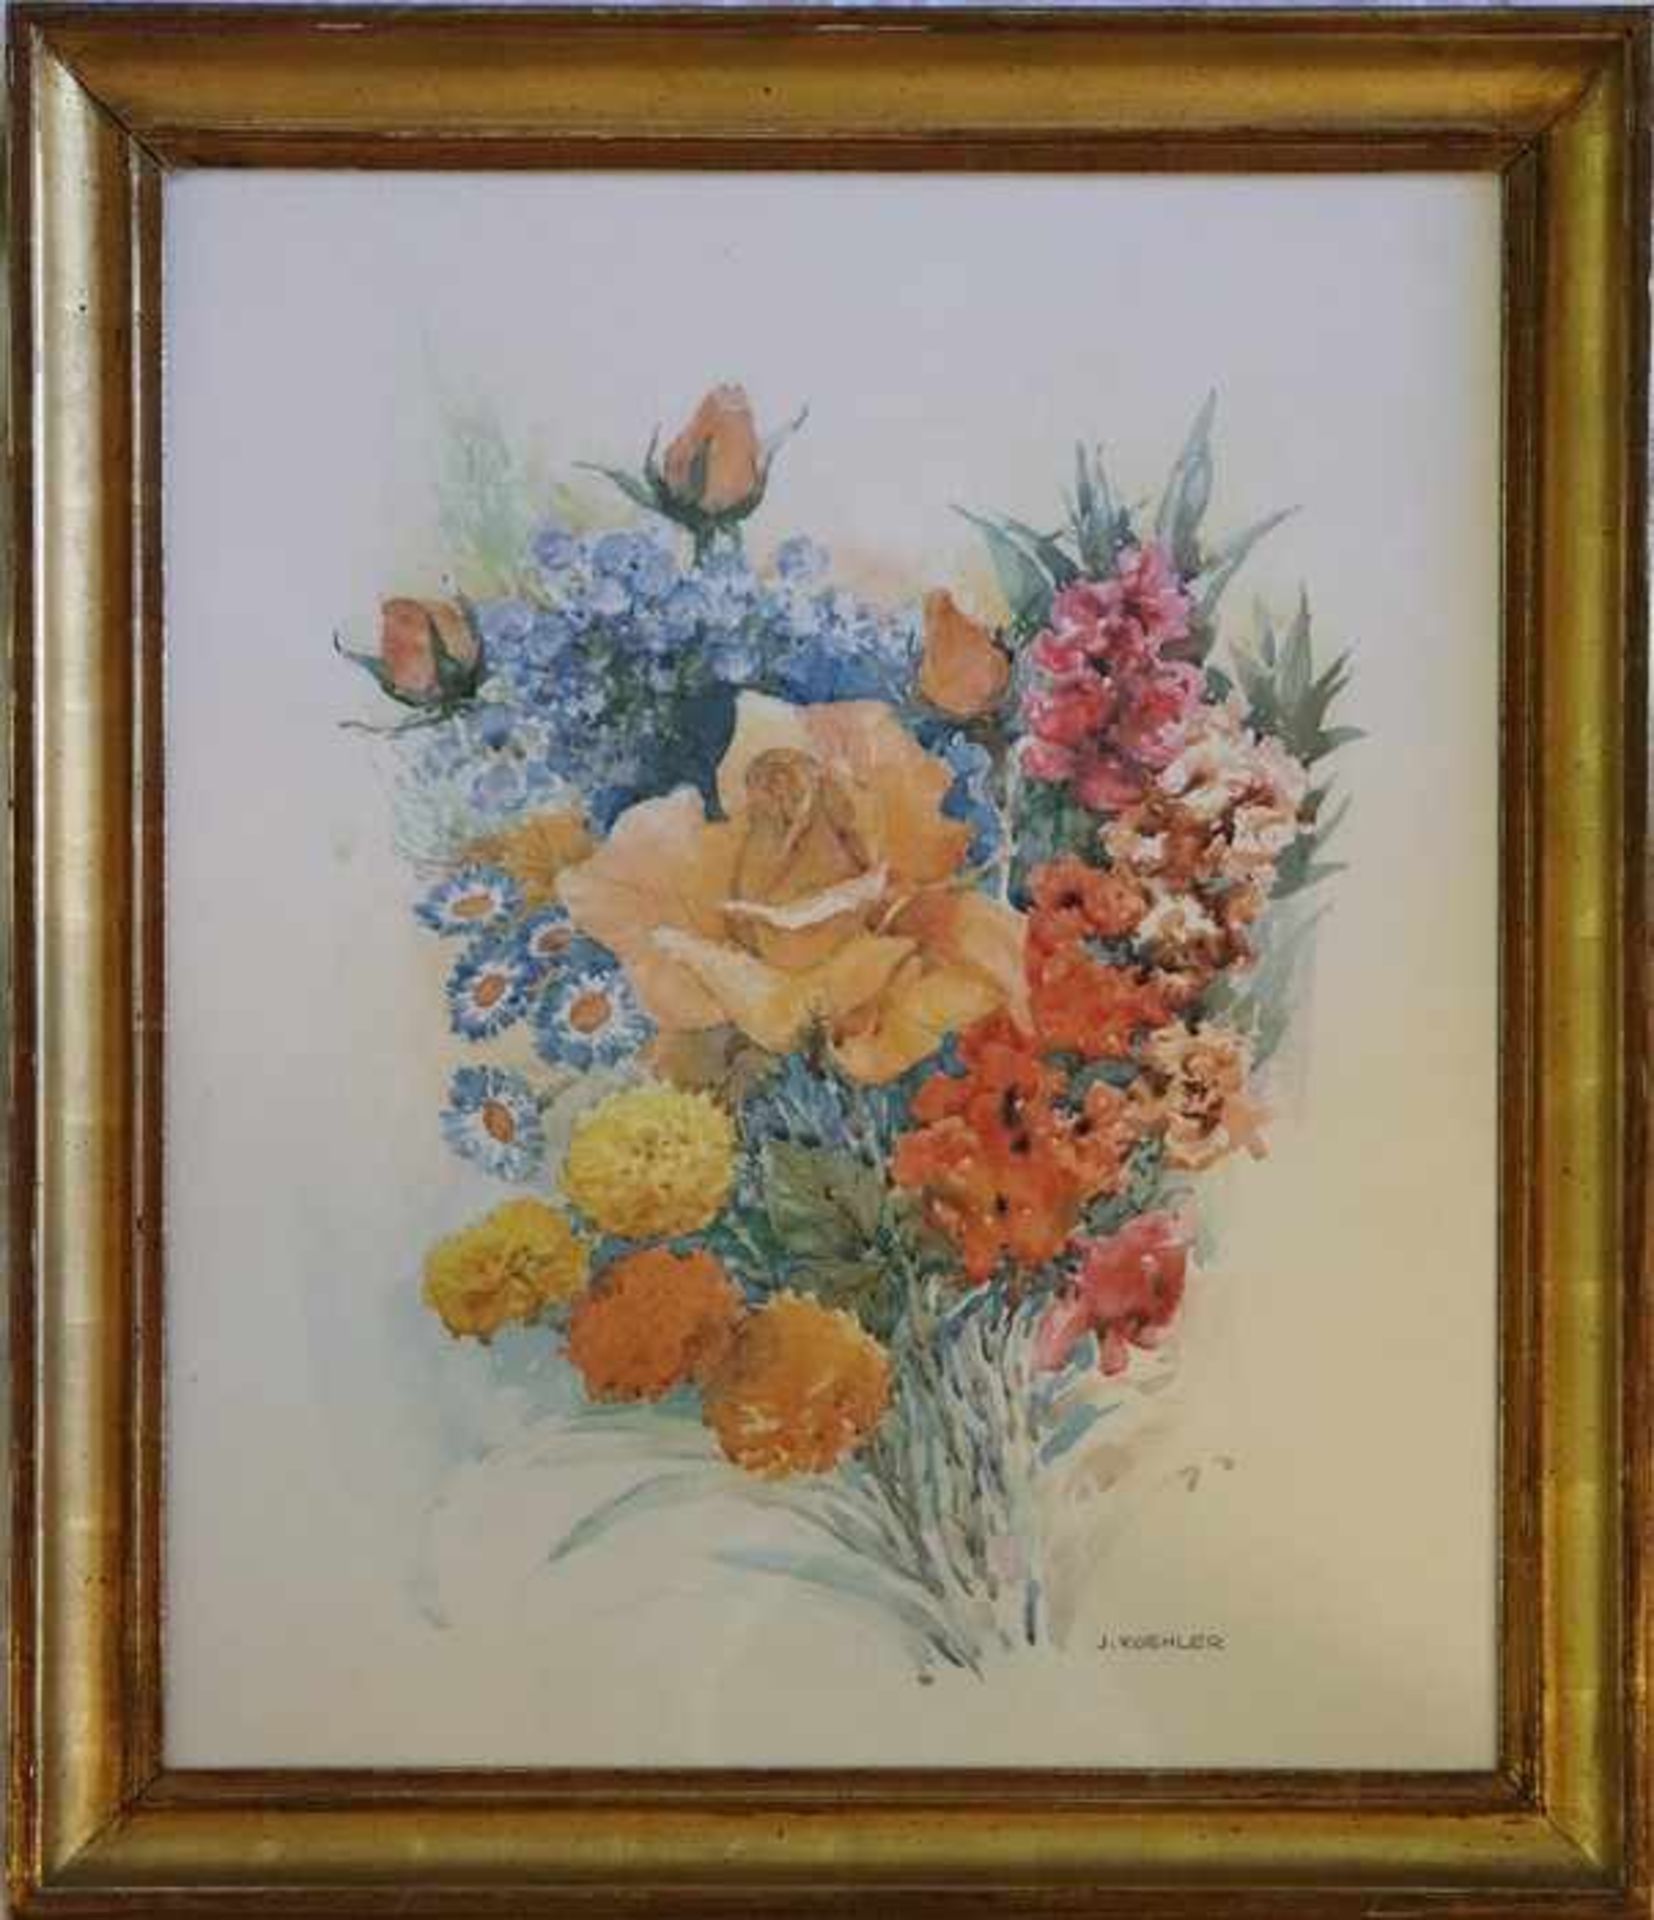 Koehler, J."Bunter Blumenstrauss", Aquarell m. kräftigen Farben, re. un. sign., Blatt min. - Bild 2 aus 4